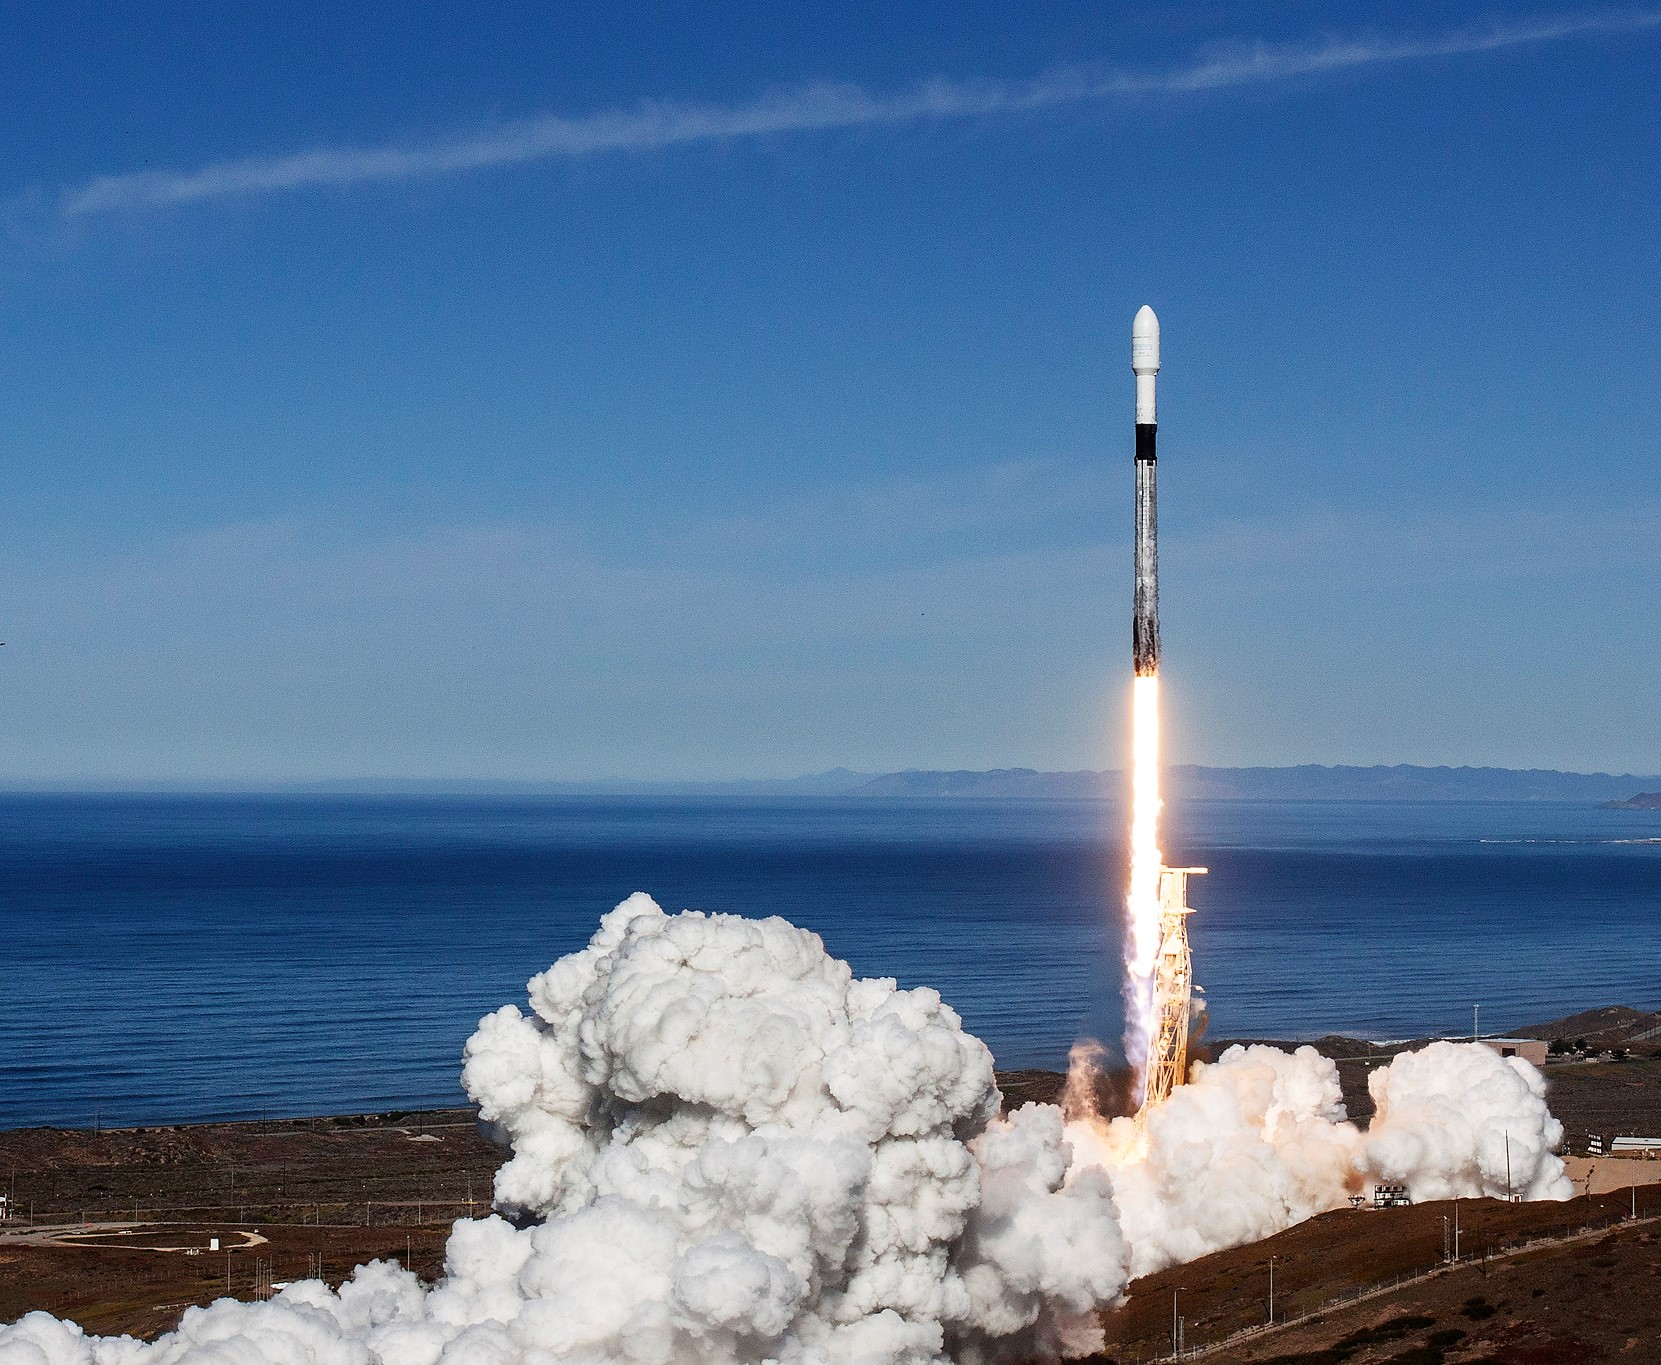 في مهمة تاريخية SpaceX تنجح في ارسال رواد الناسا إلى الفضاء لأول مرة